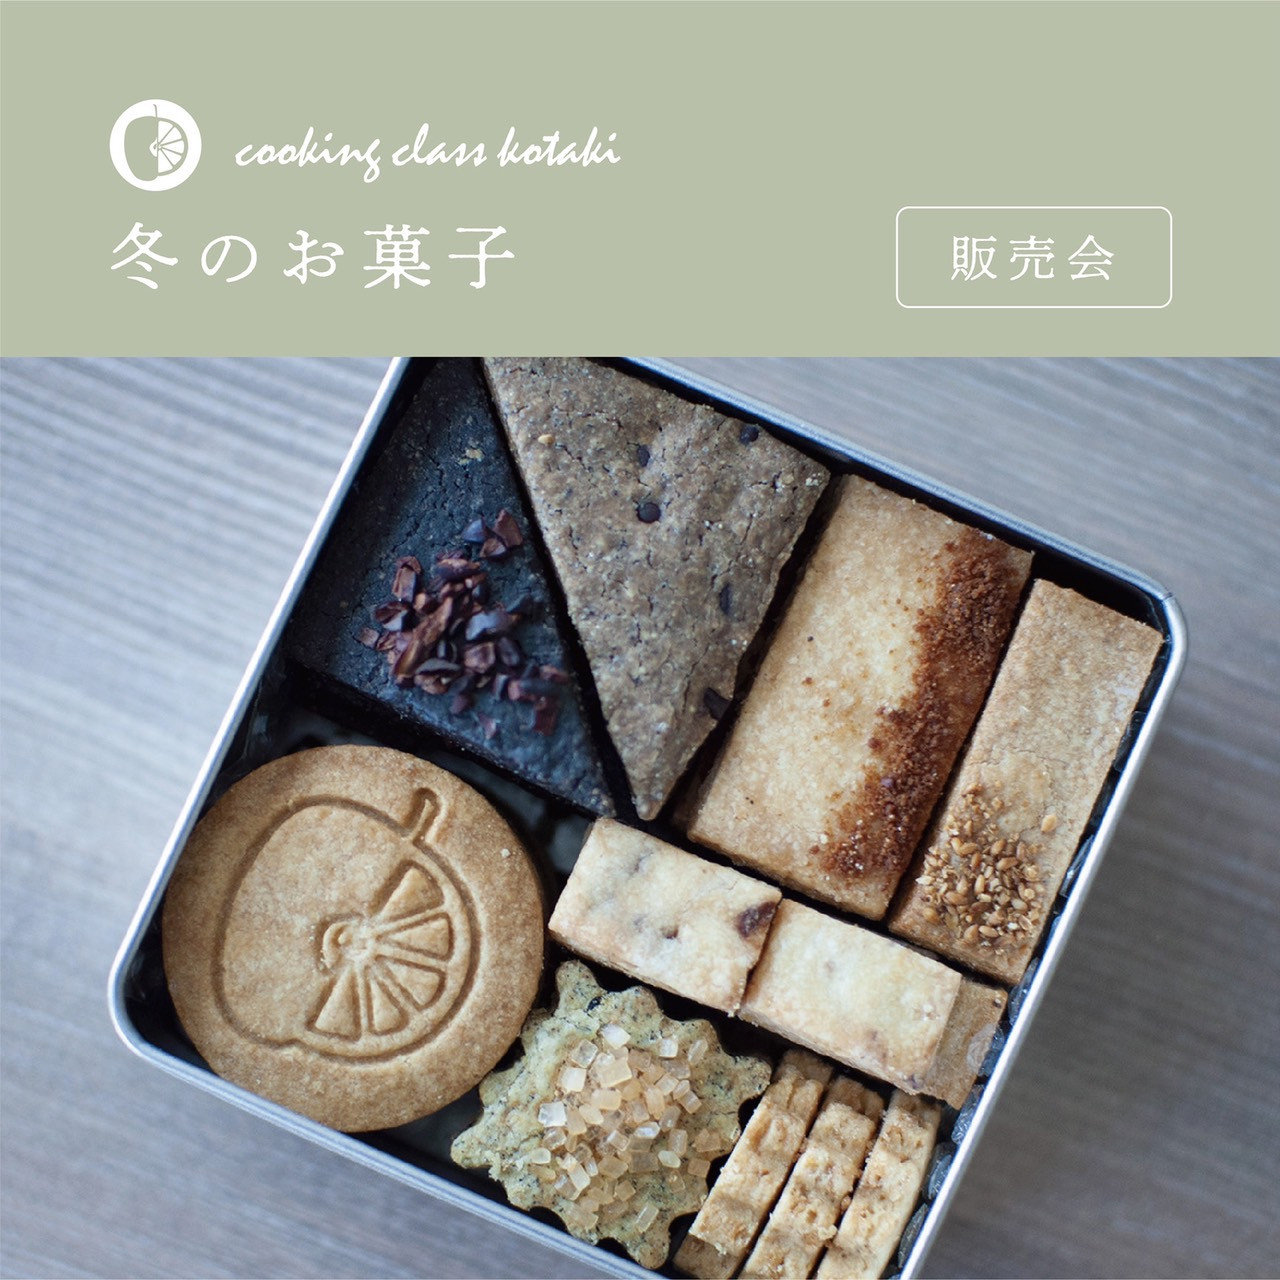 Cooking class kotaki クッキー缶販売のご予約のお知らせ